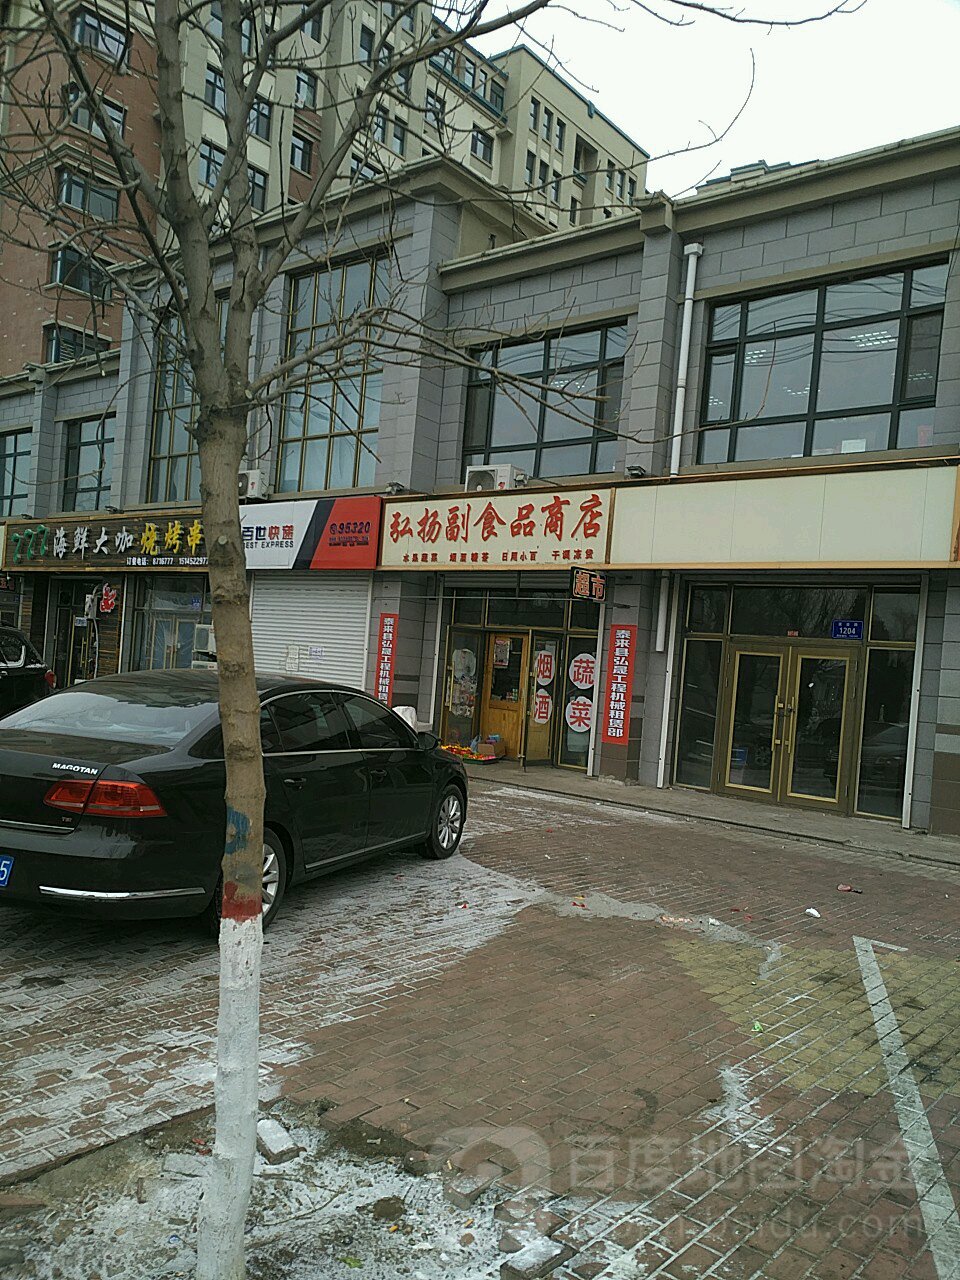 弘扬副食品商店